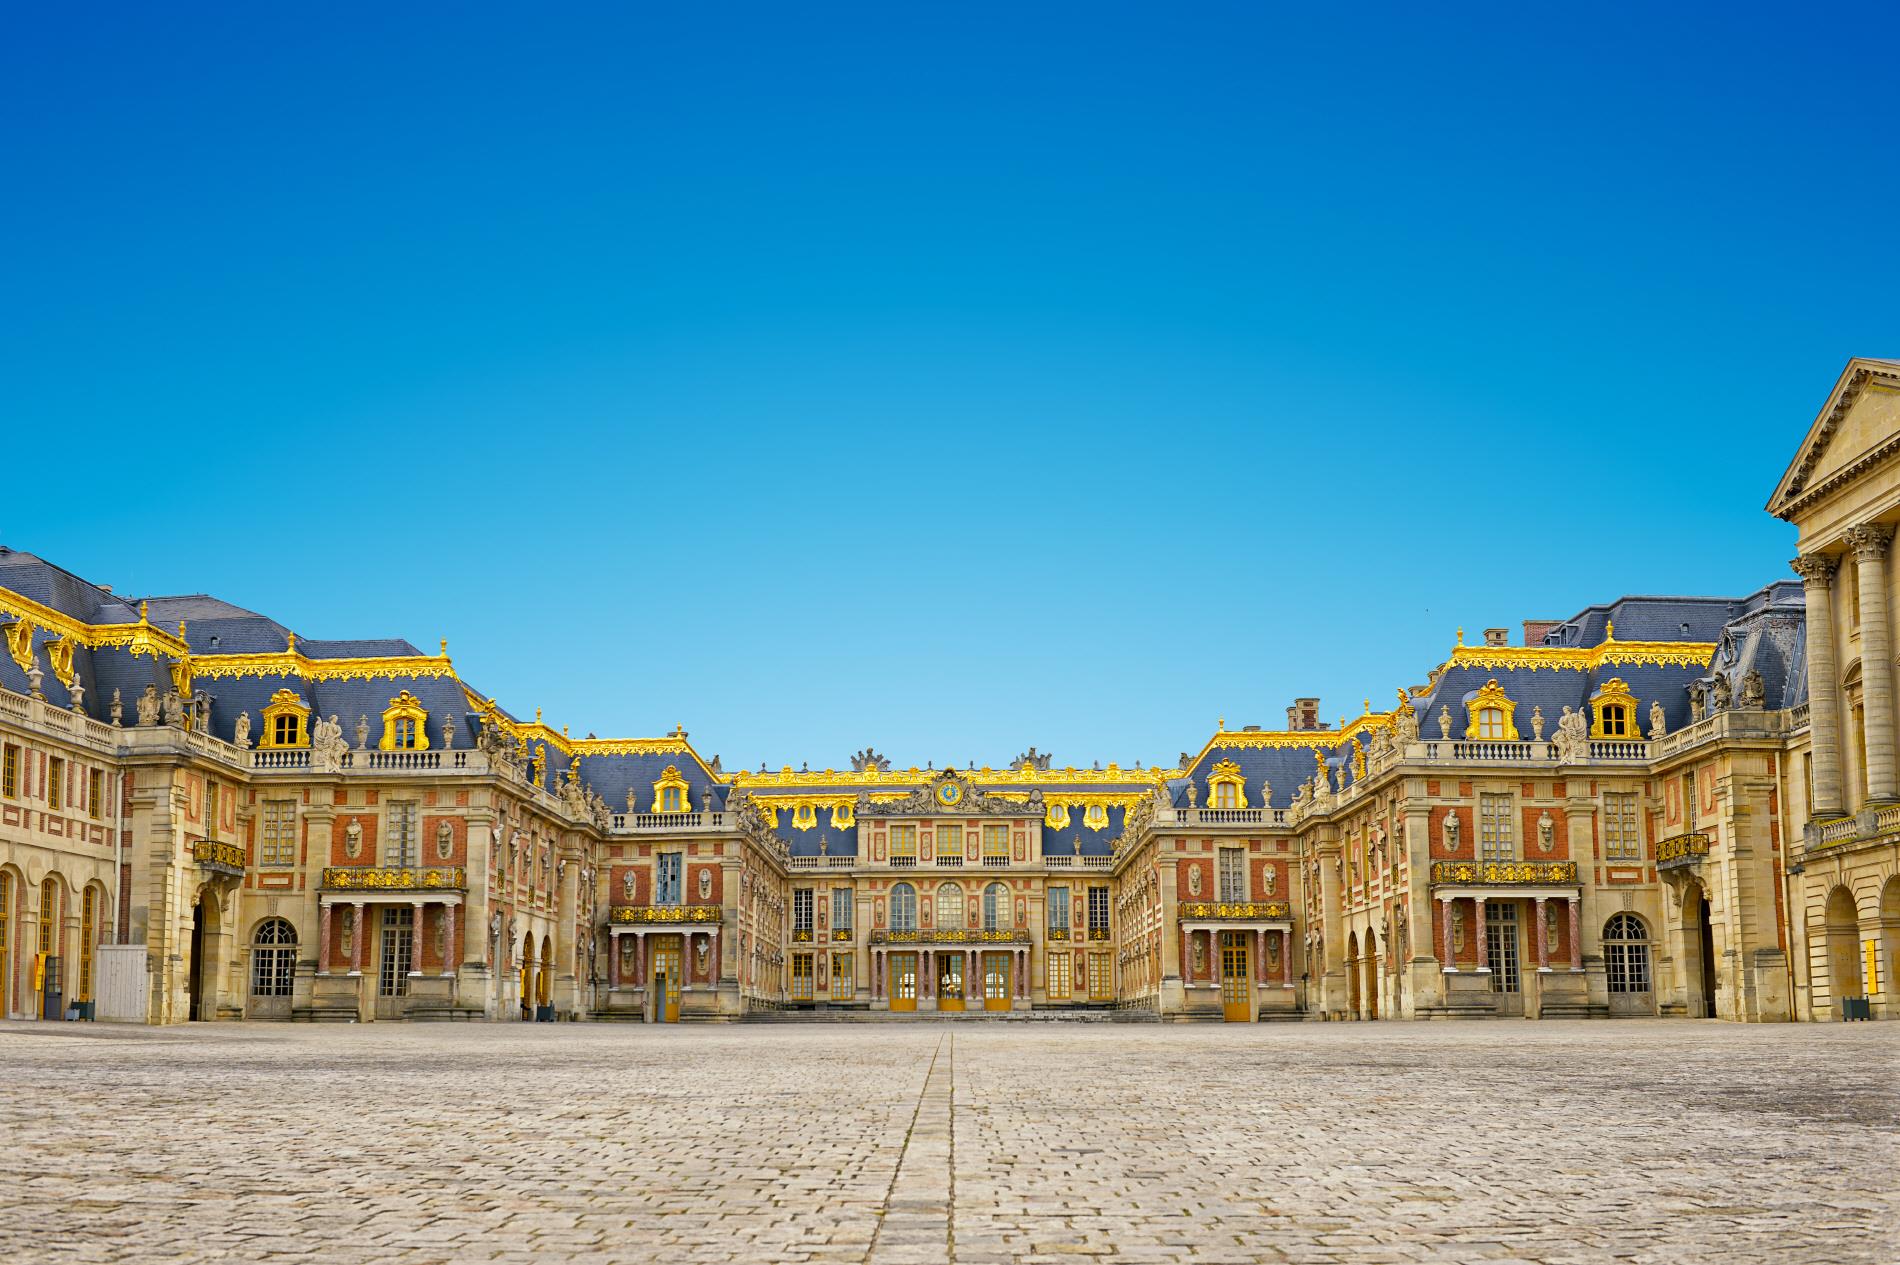 베르사유 궁전  Palace of Versailles